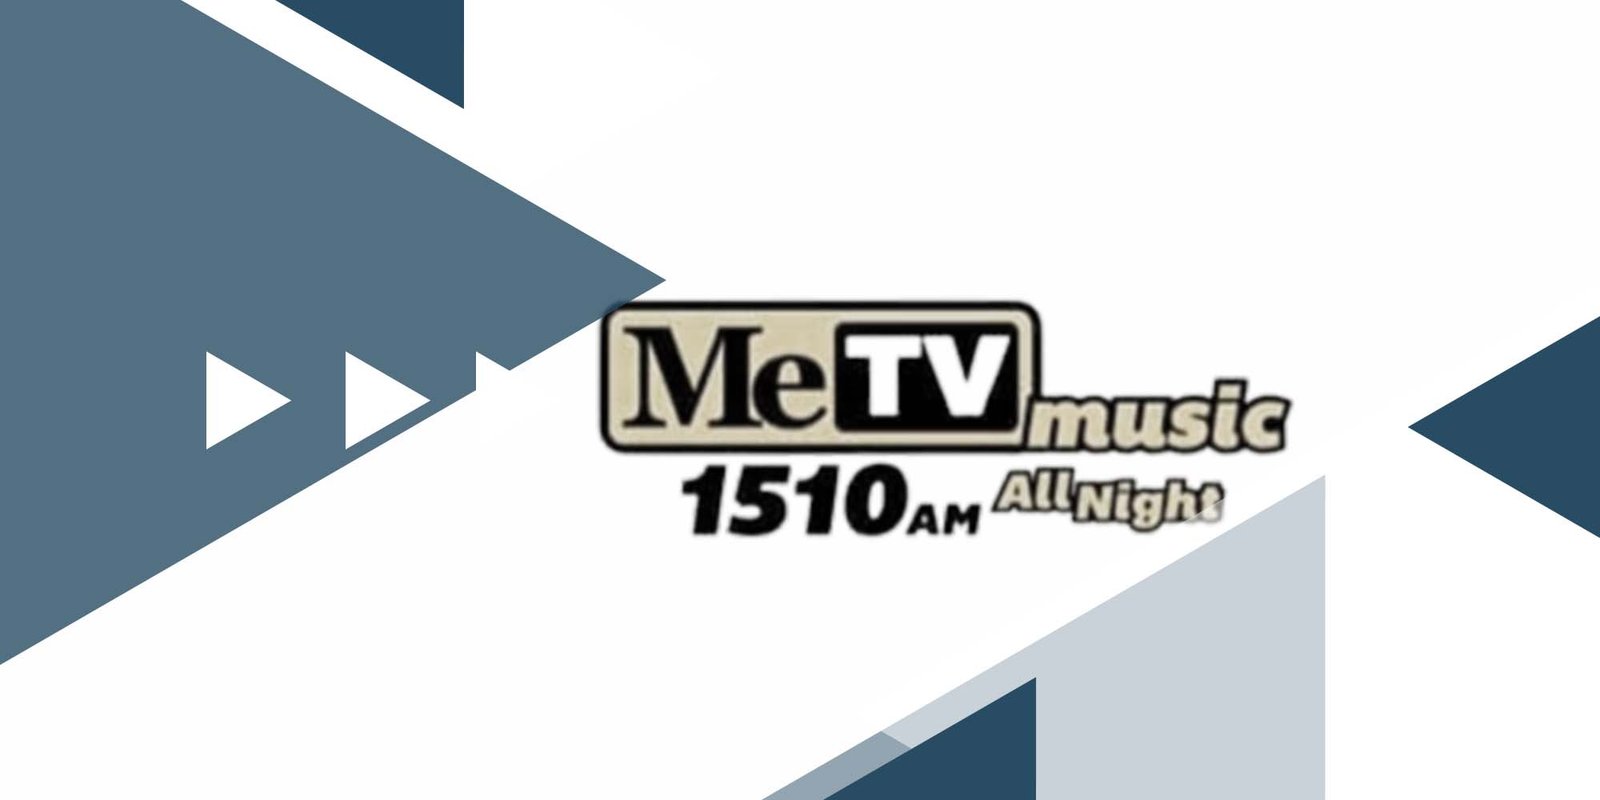 MeTV Music